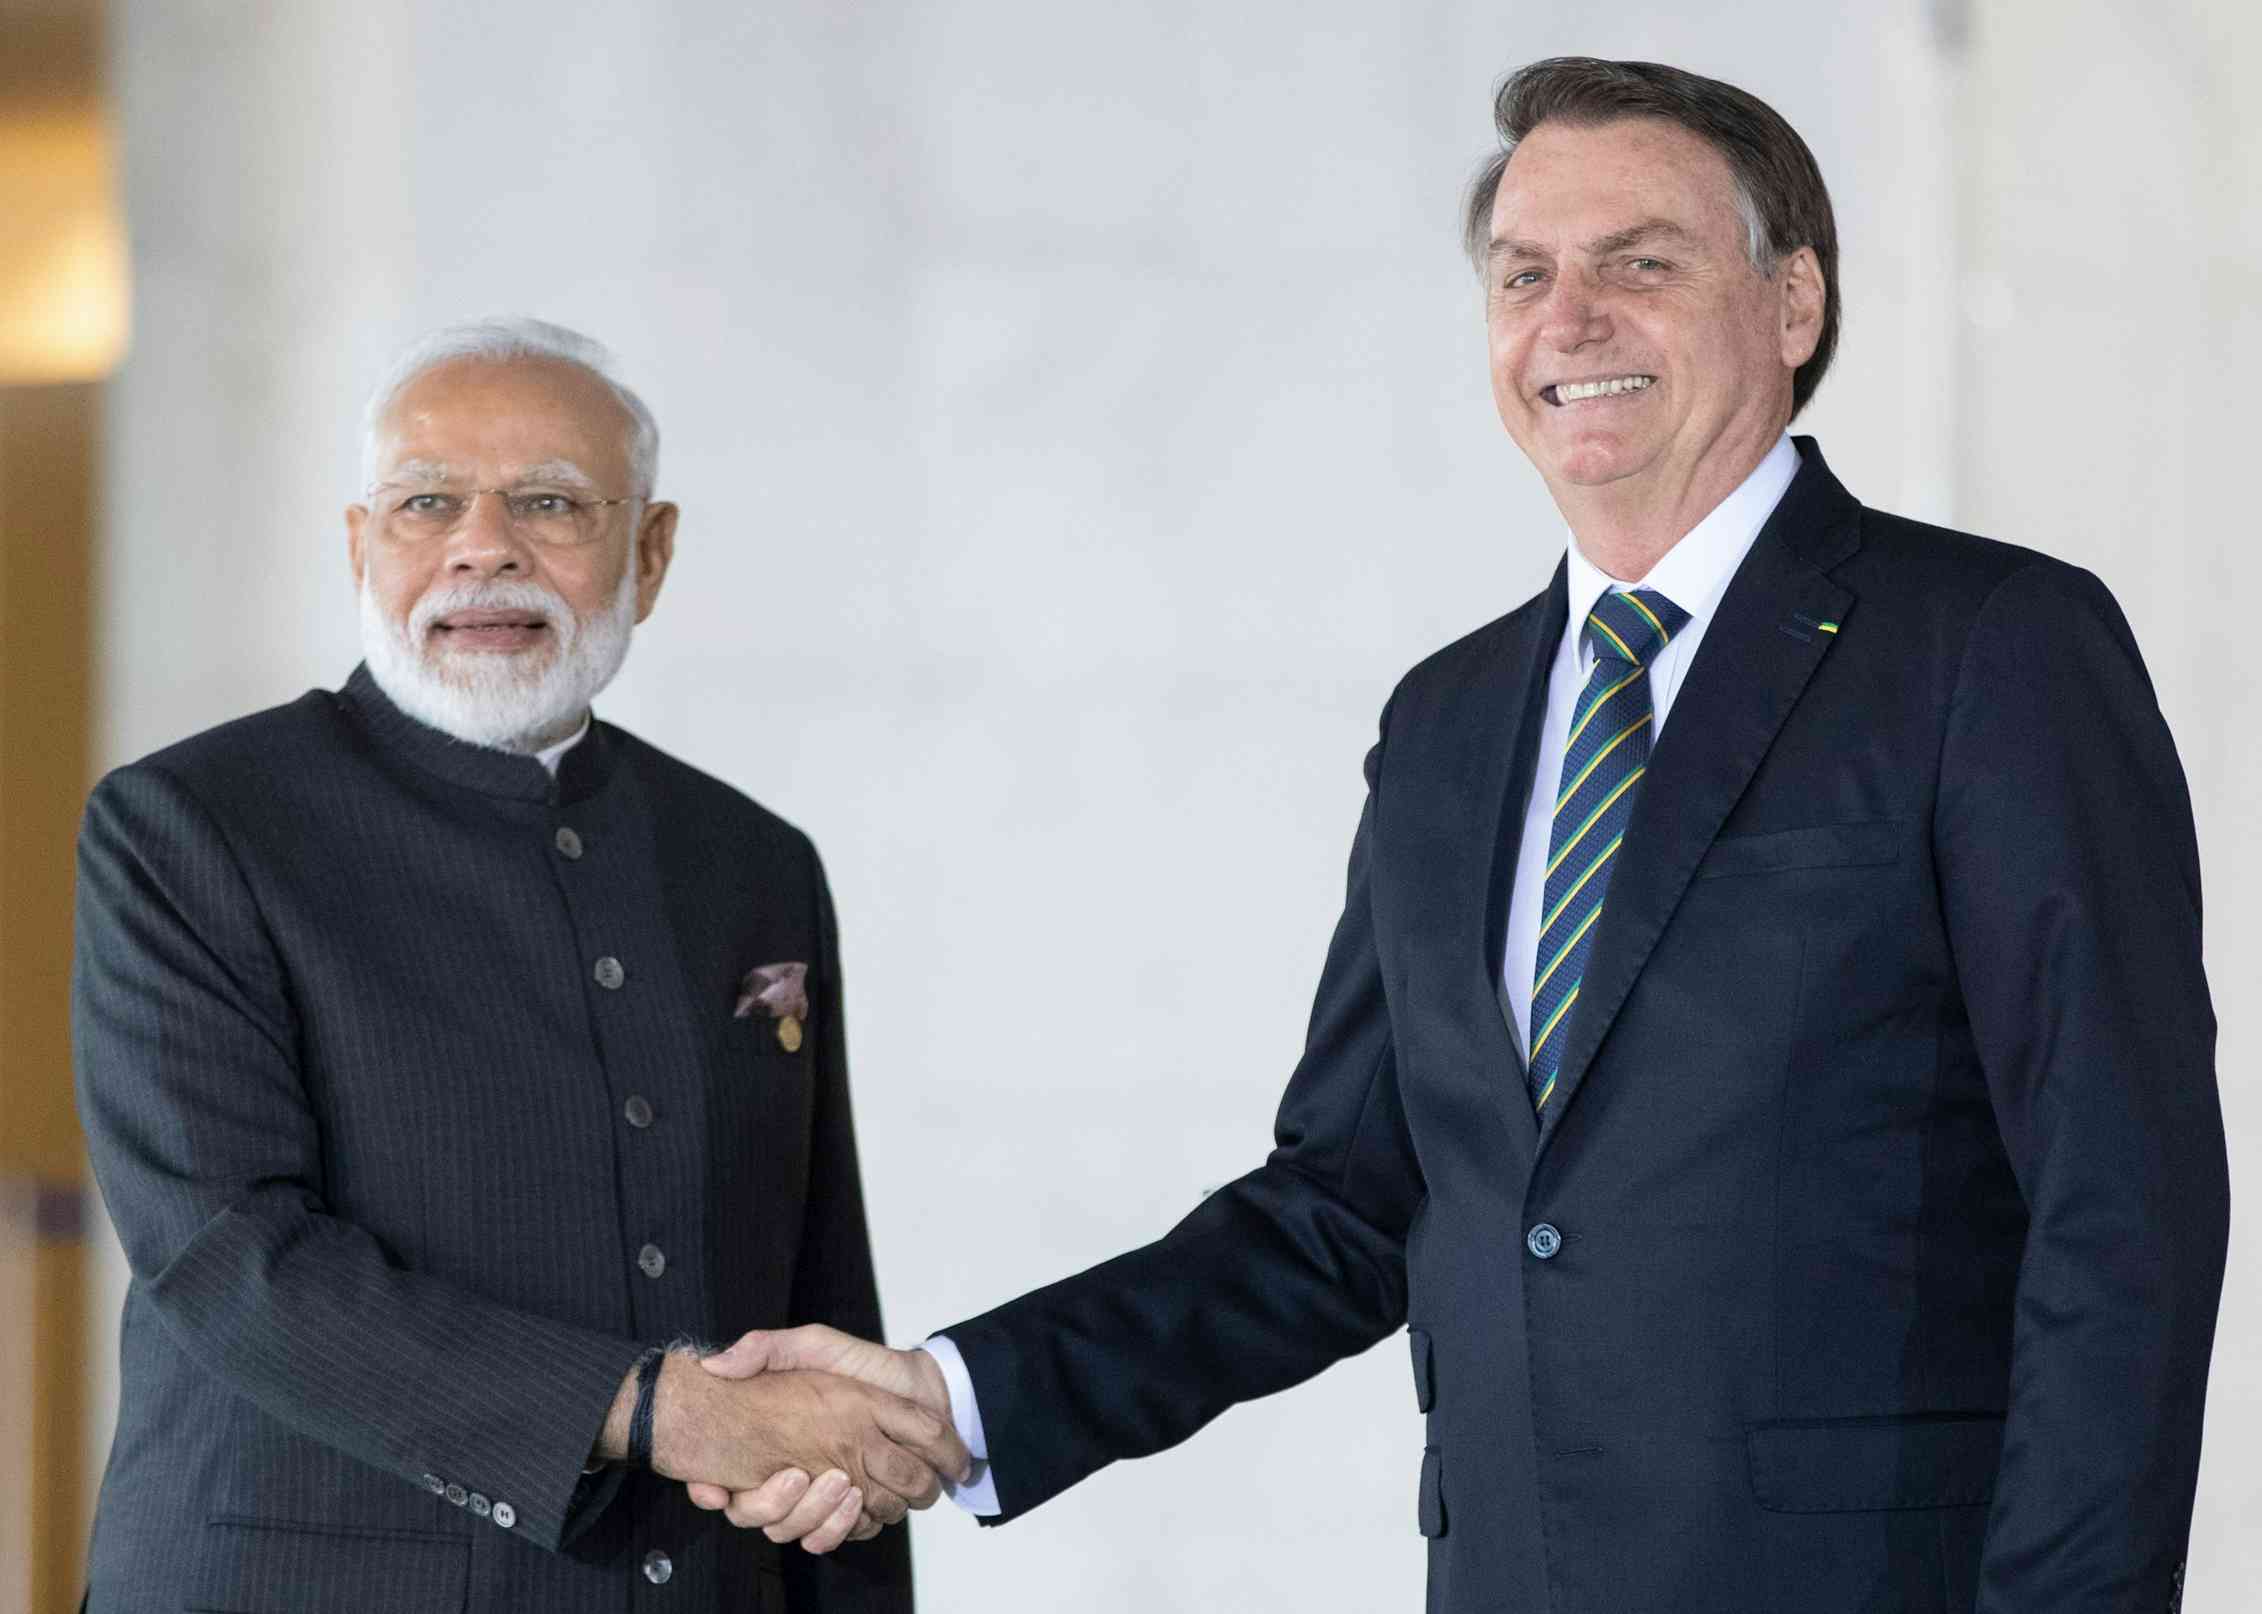 Modi and Bolsonaro shake hands